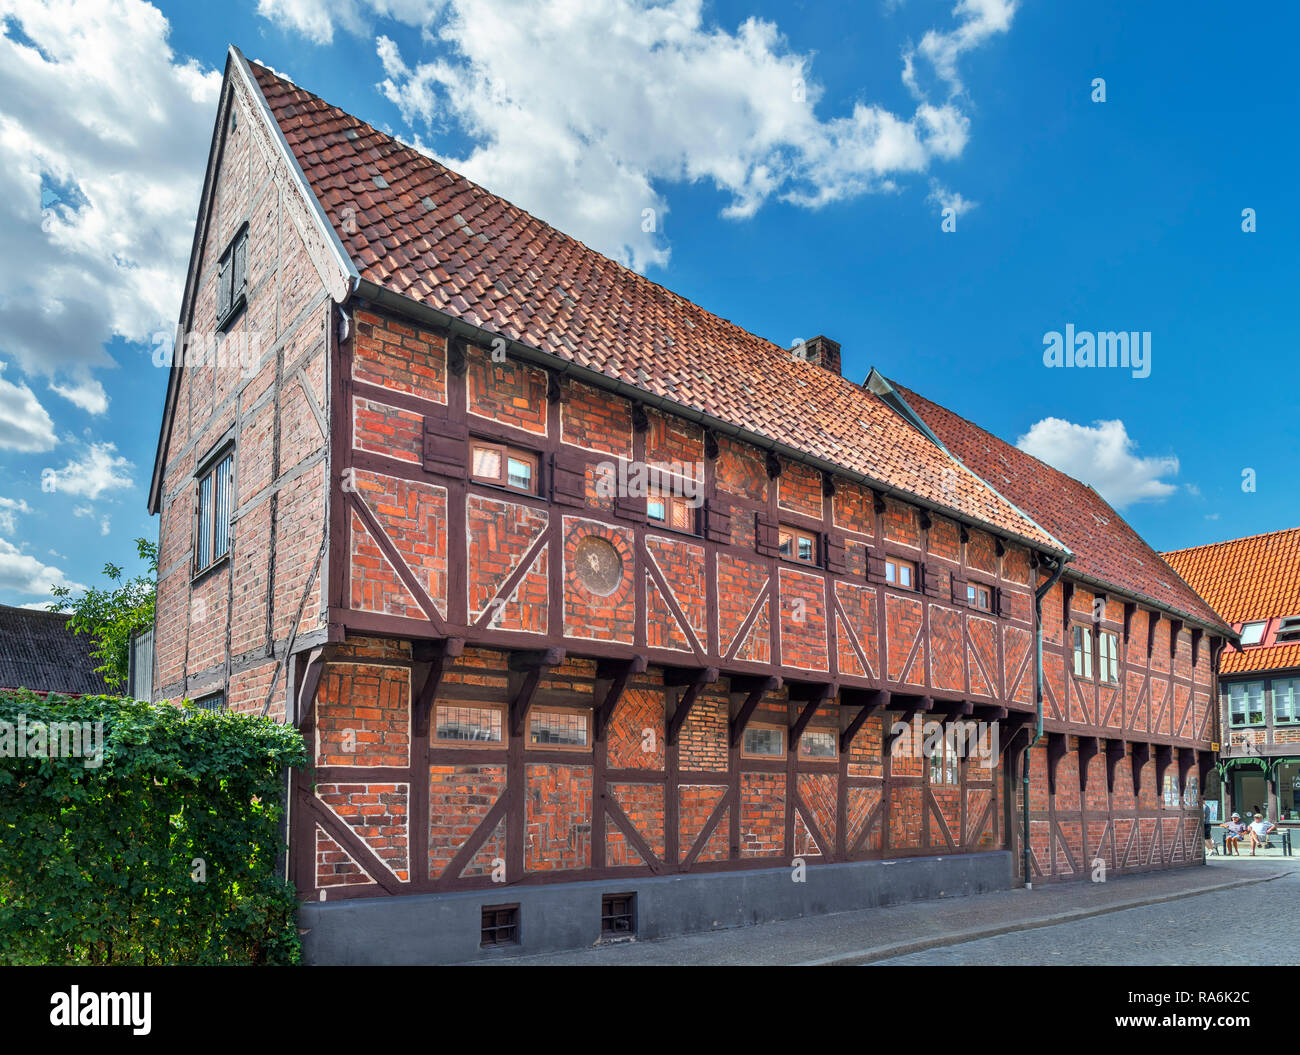 Pilgrändshuset, una casa in legno e muratura risalente al 1470 e il più antico edificio di tale in Scandinavia,Ystad, Svezia Foto Stock